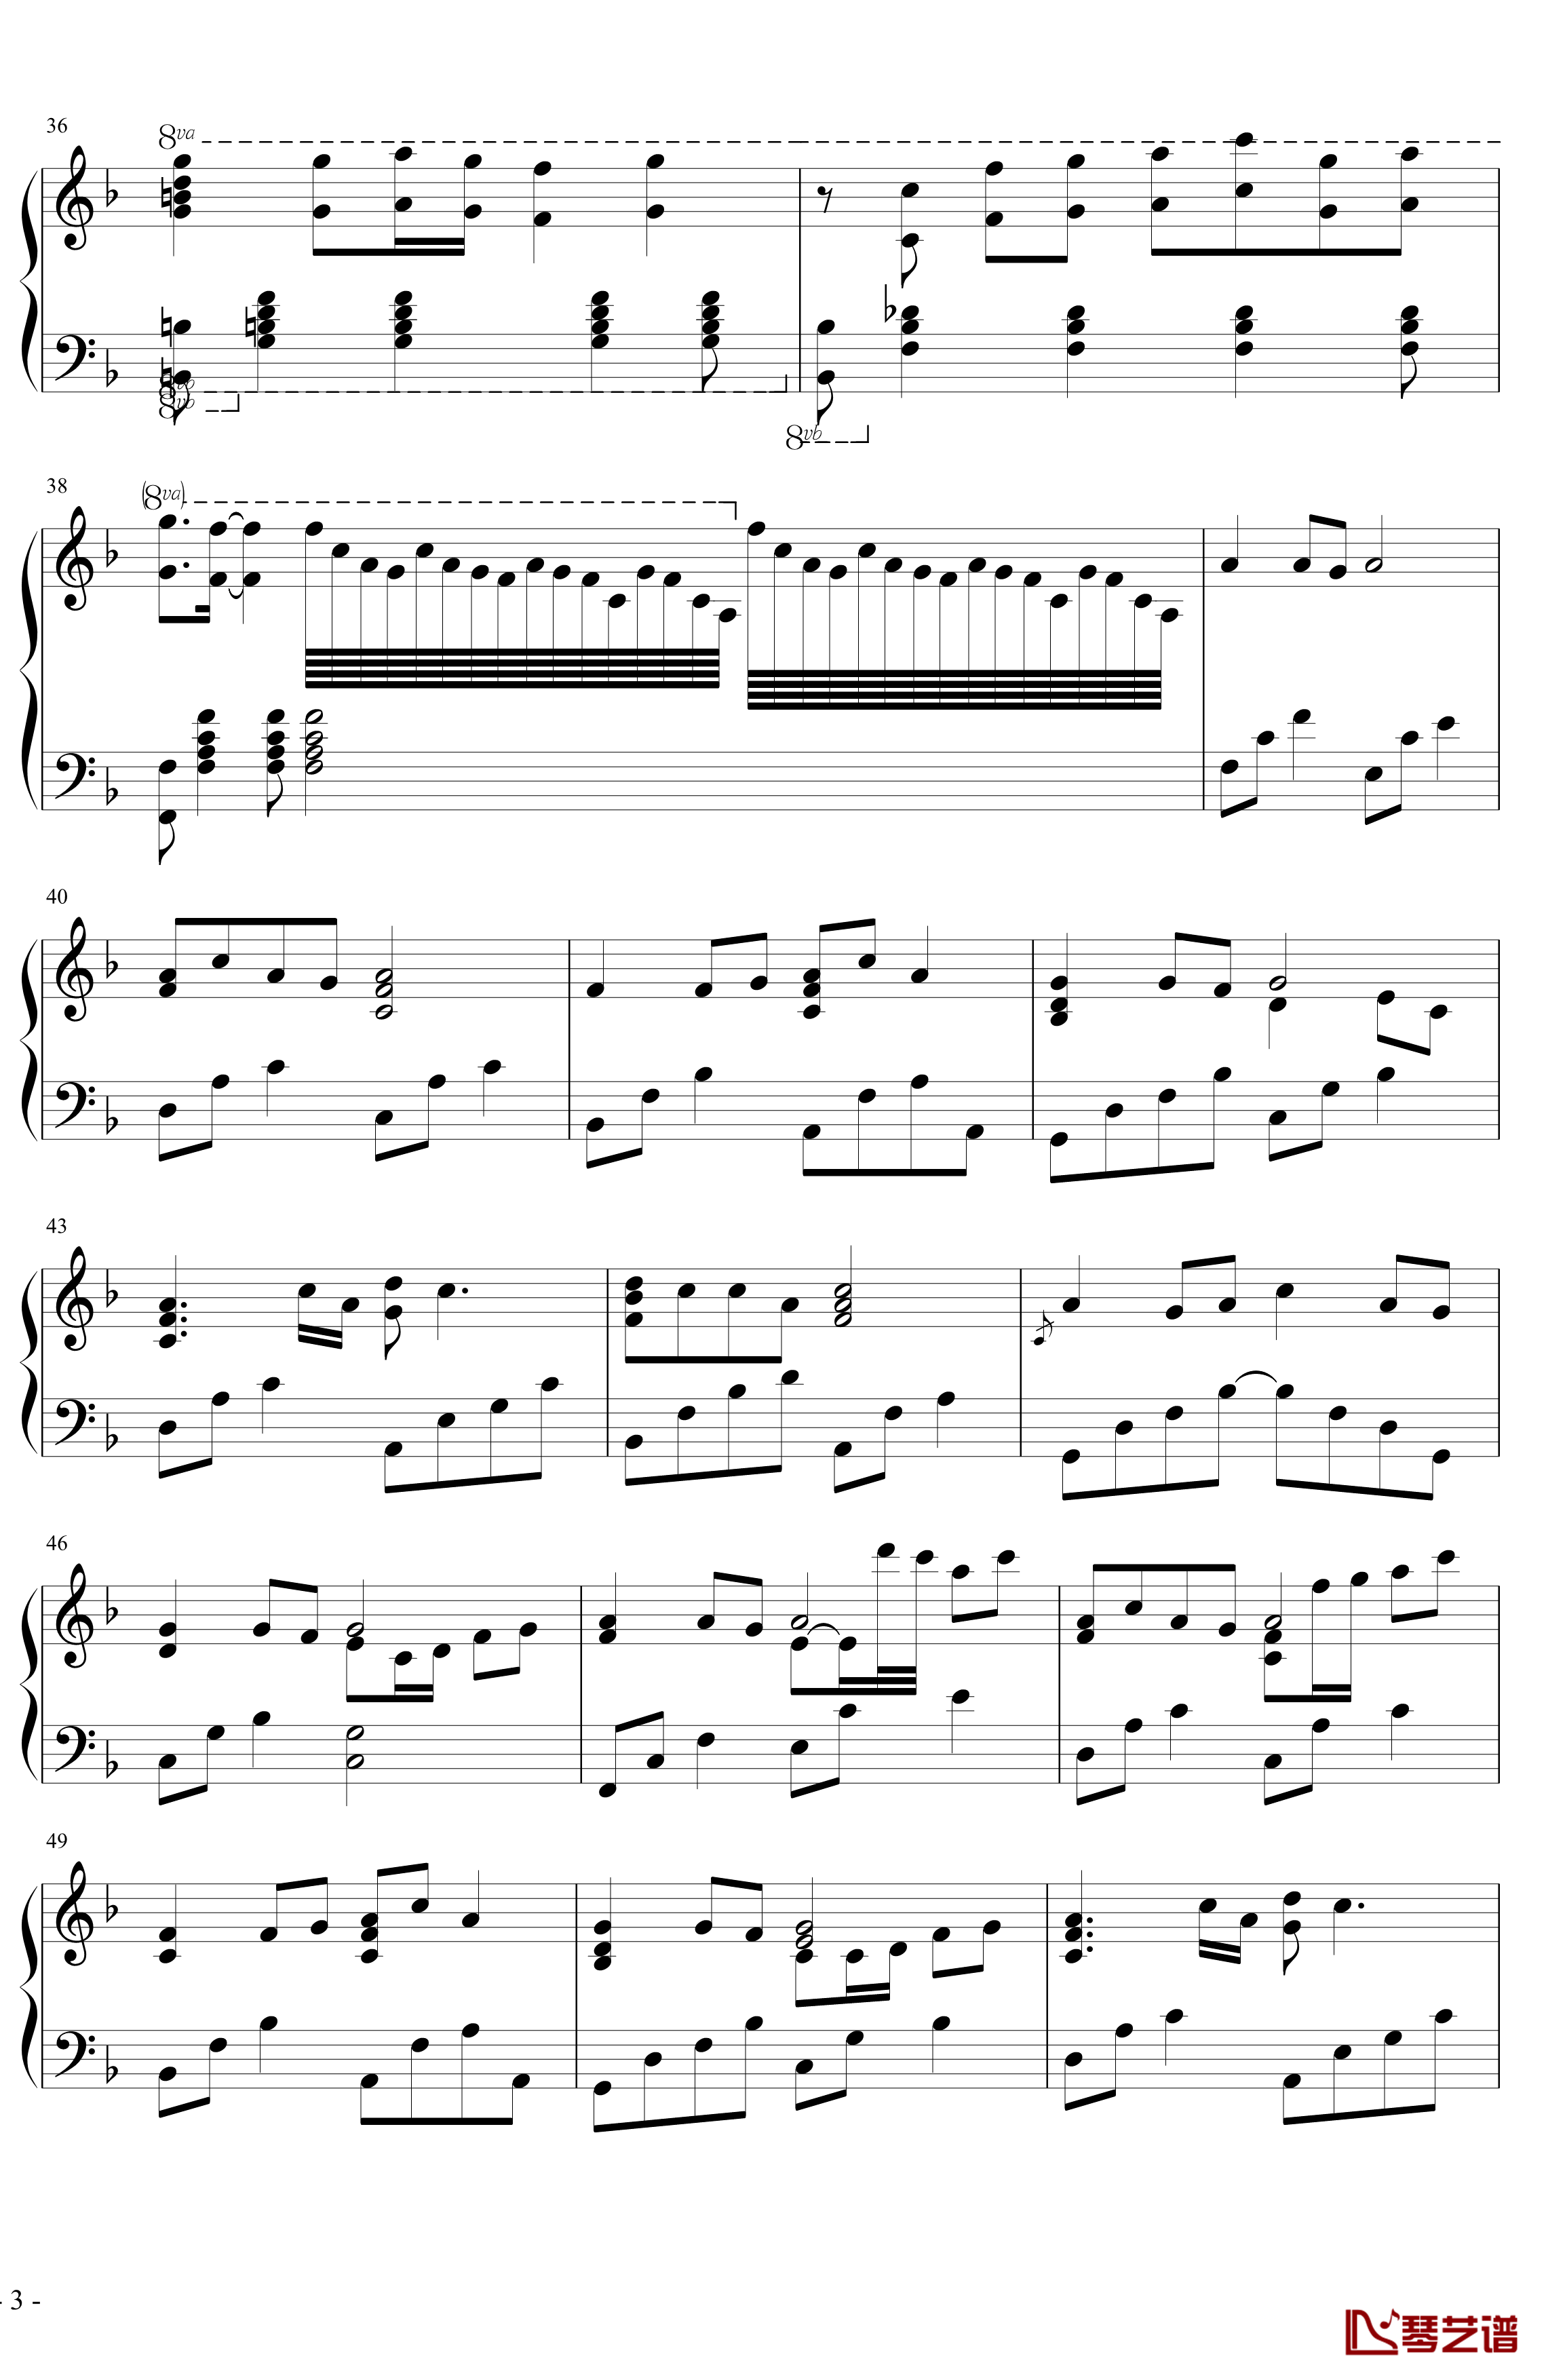 菊花台钢琴谱-超级演奏版-周杰伦3